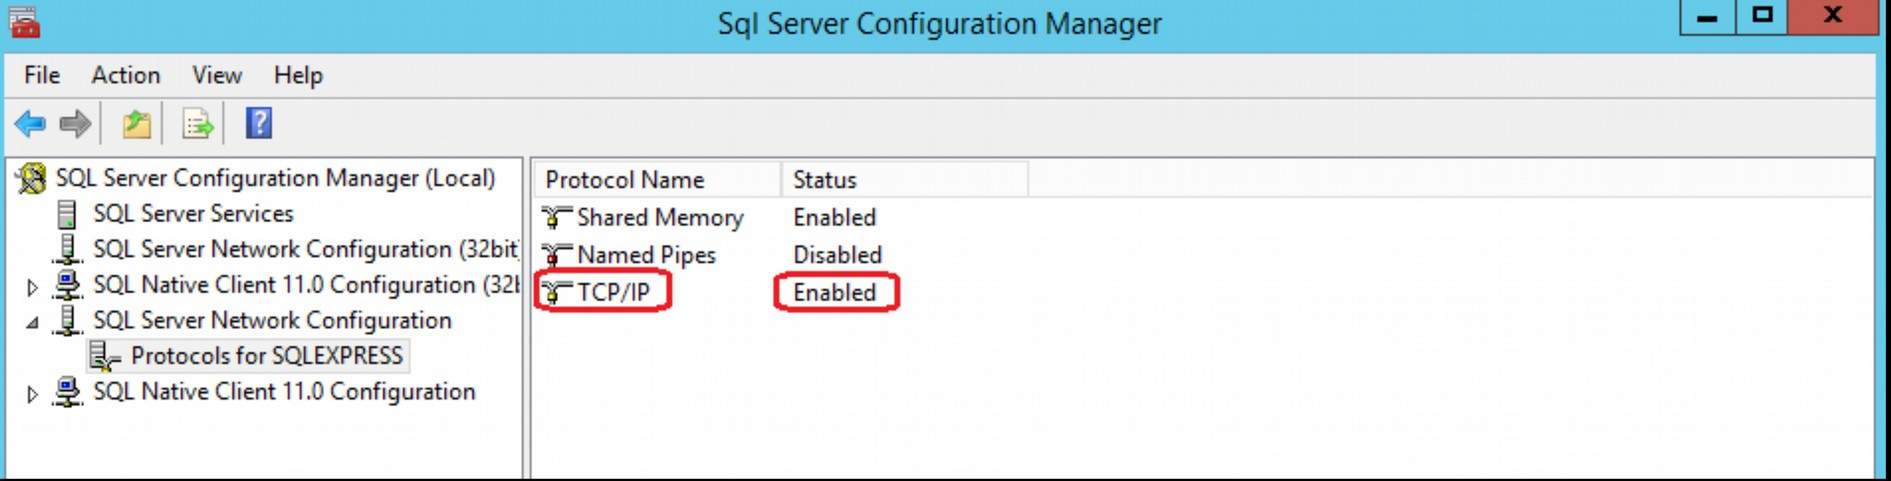 Afhankelijk van hoe je het heb genoemd, zet bij de Protocols de TCP/IP op Enabled Controleer vervolgens of bij SQL Server Services de SQL Server Browser op Automatic staat!